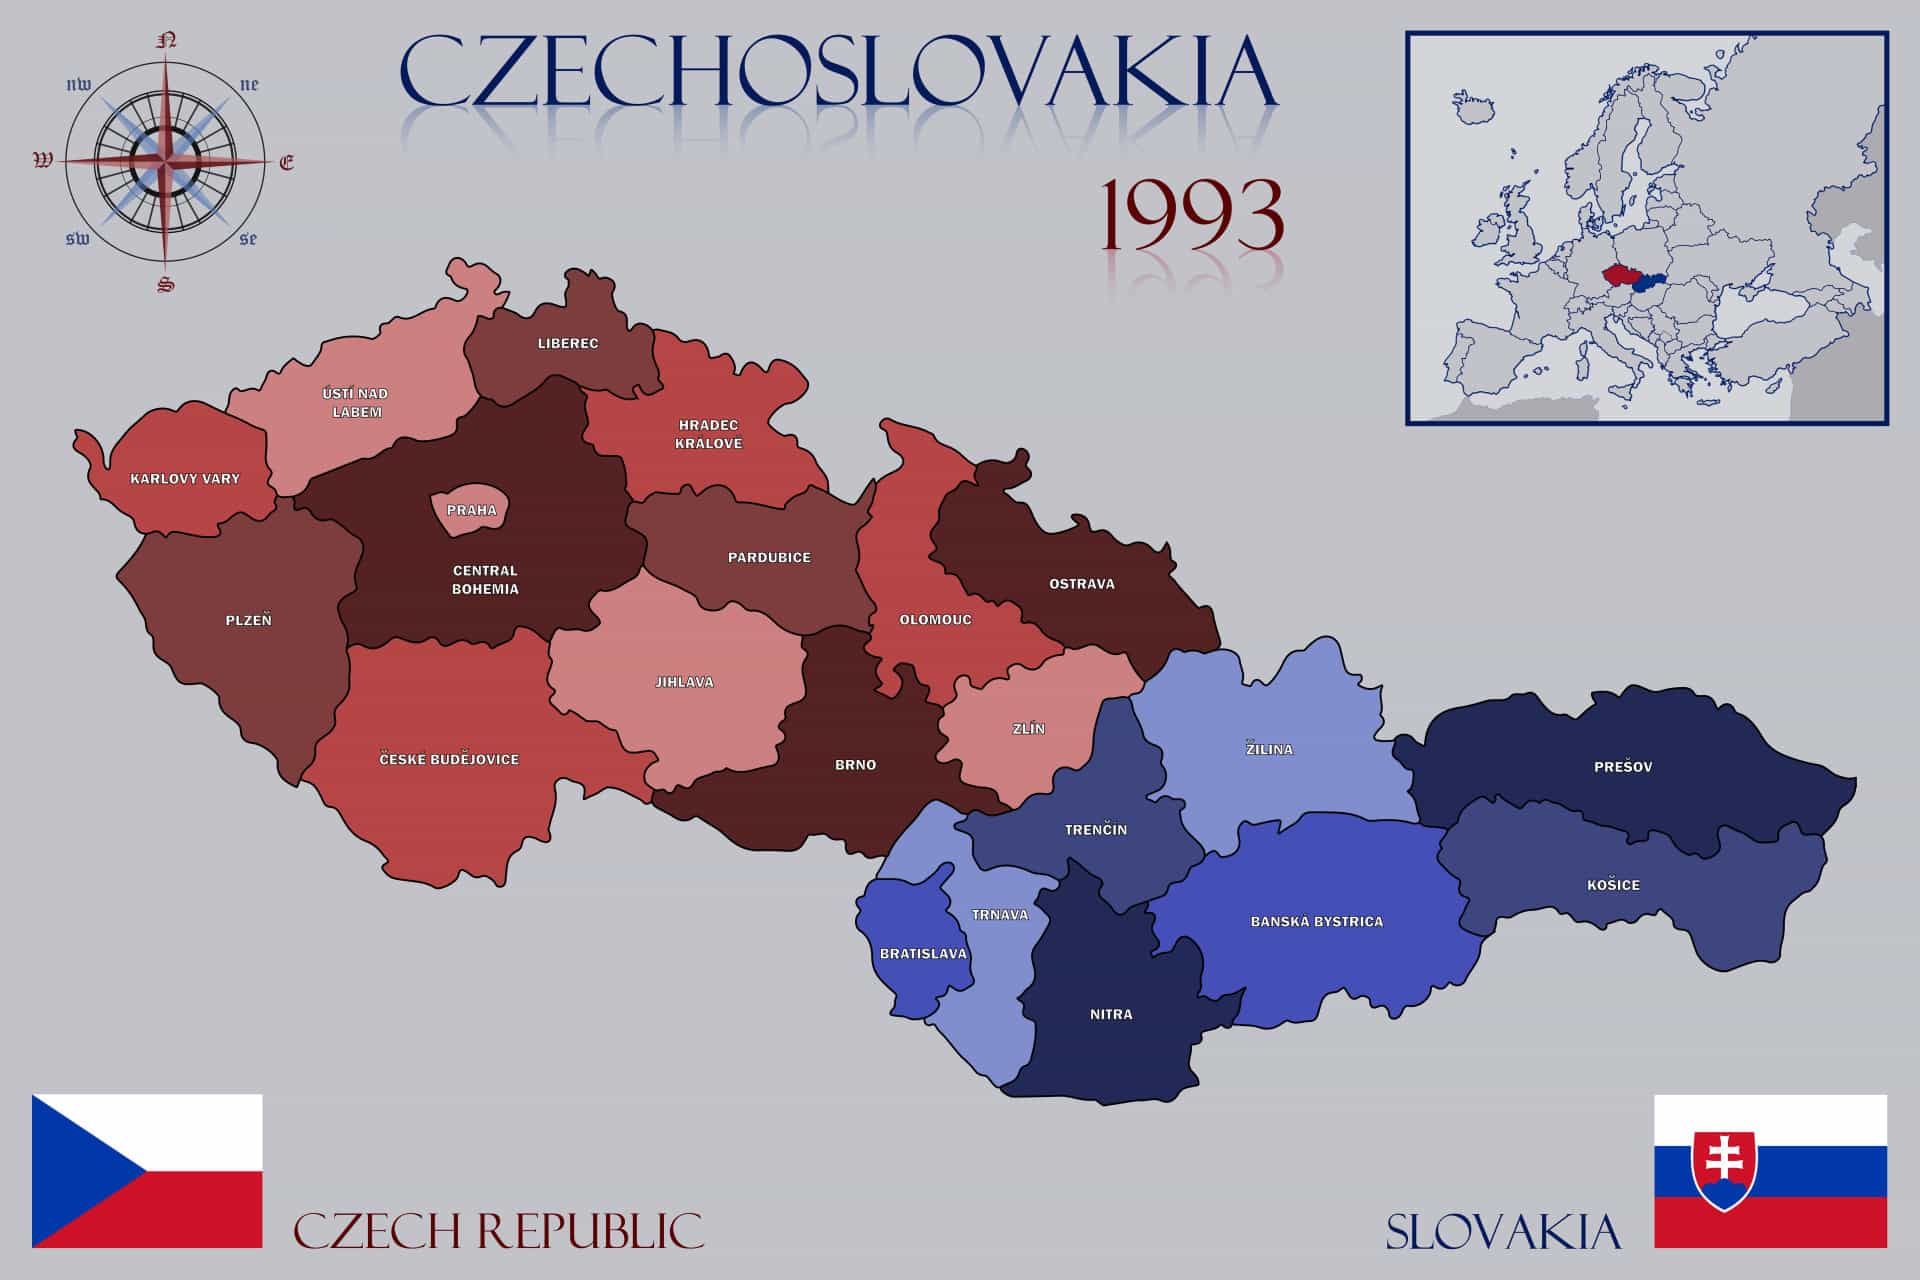 Чехословакия чехия и словакия. В 1993 году Чехословакия разделилась на Чехию и Словакию. Распад Чехословакии карта. Разделение Чехословакии на Чехию и Словакию. 1993 Г. распад Чехословакии на Чехию и Словакию.